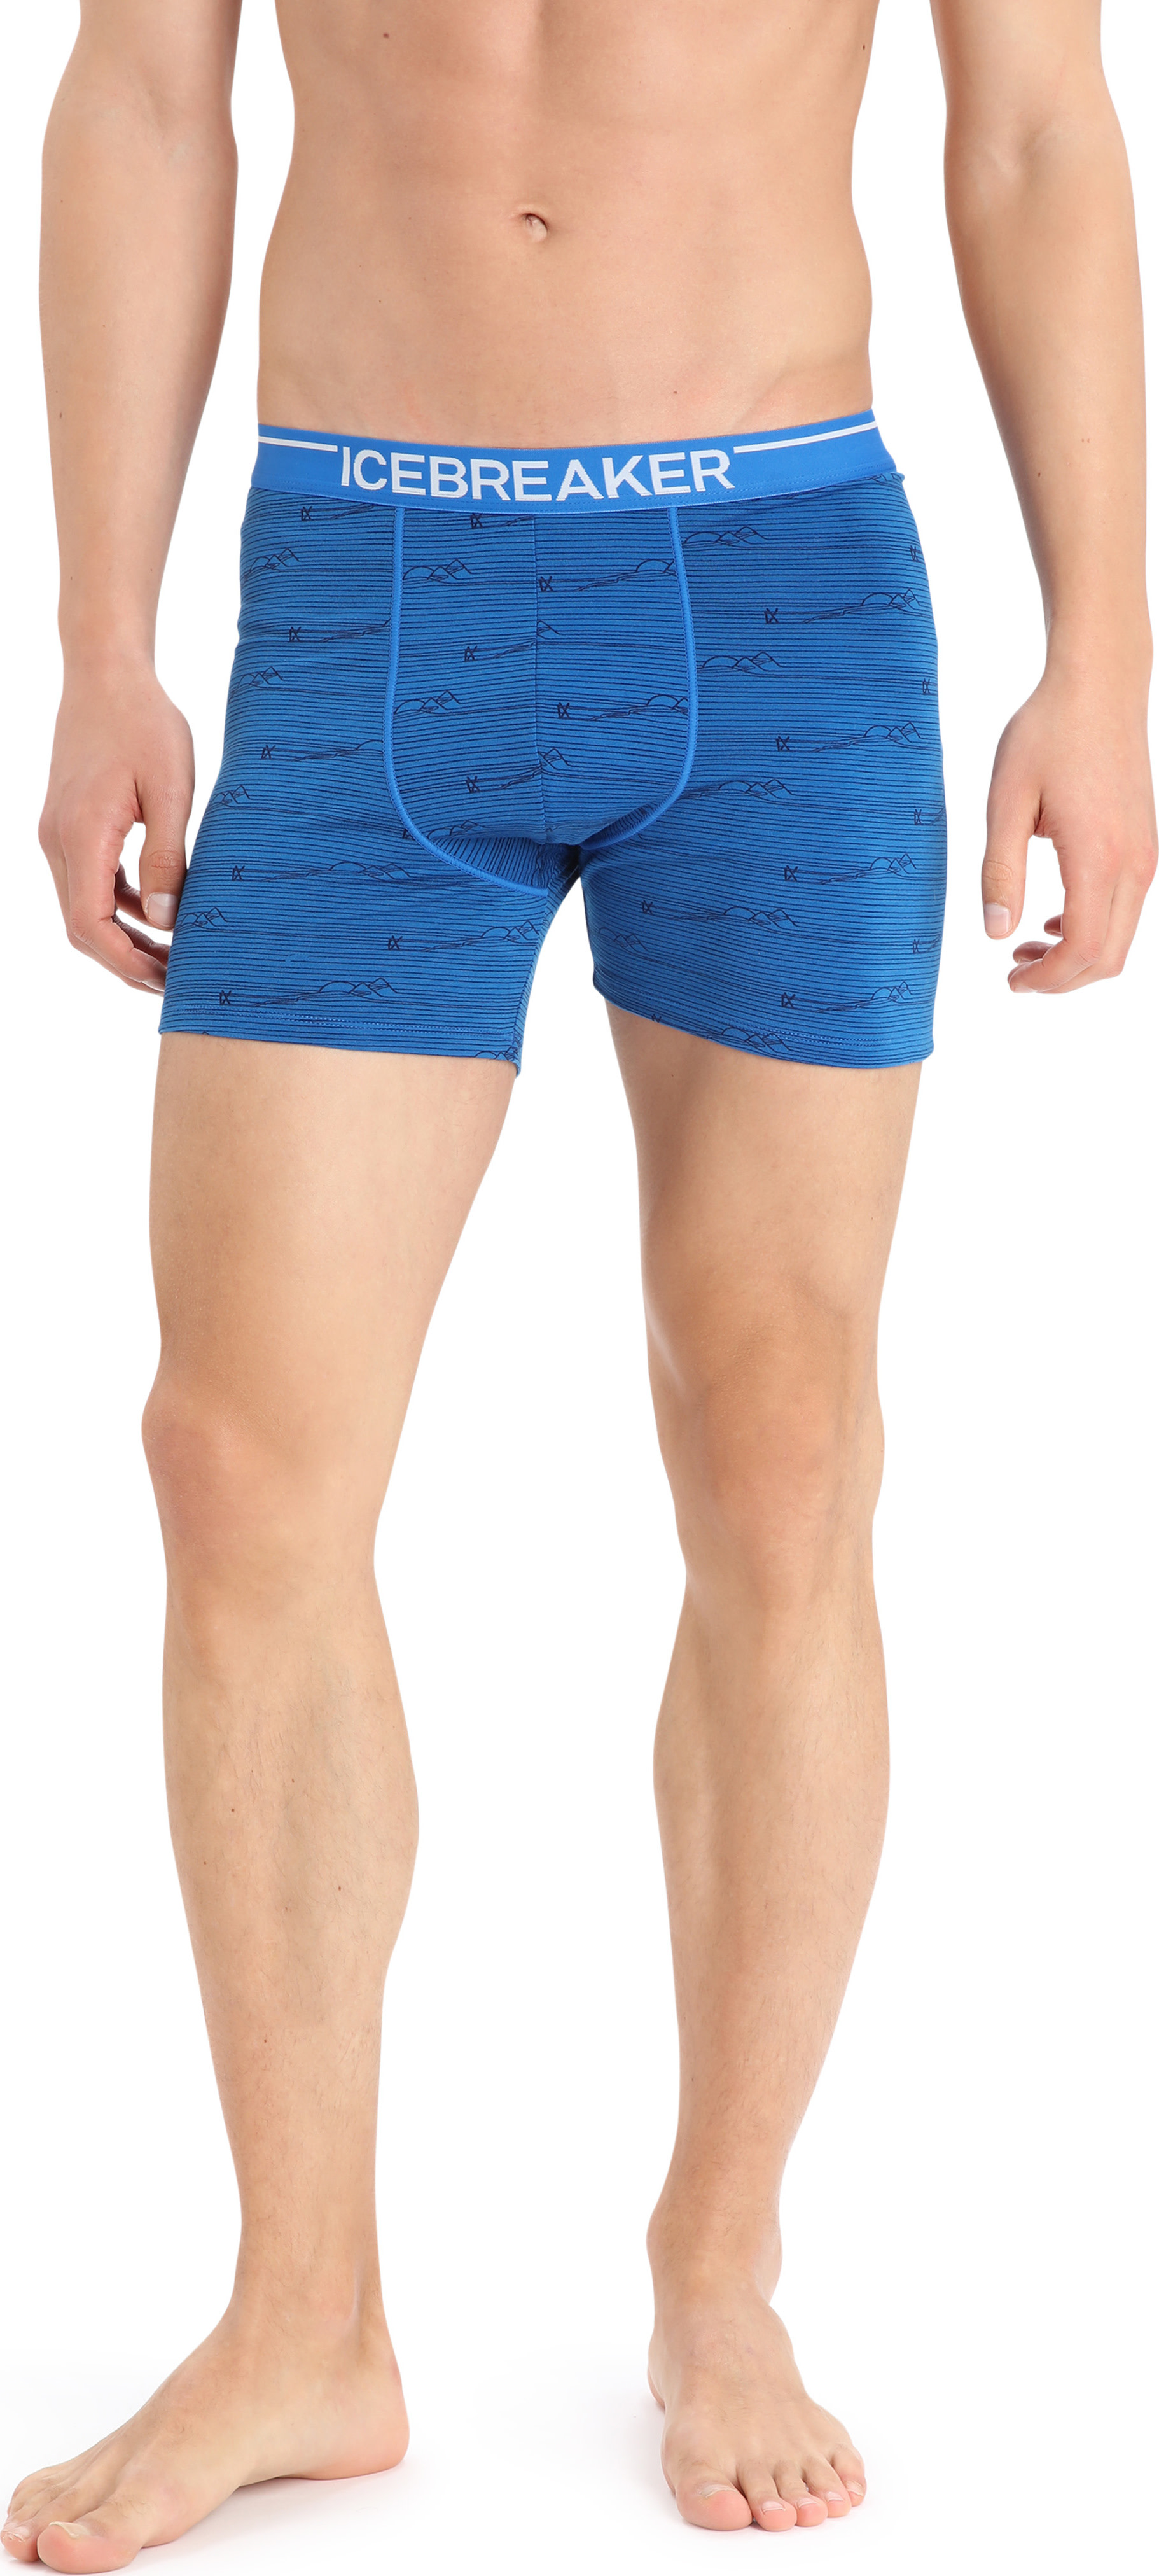  M Anatomica Boxers, GRITSTONE HTHR - men's underwear -  ICEBREAKER - 30.77 € - outdoorové oblečení a vybavení shop